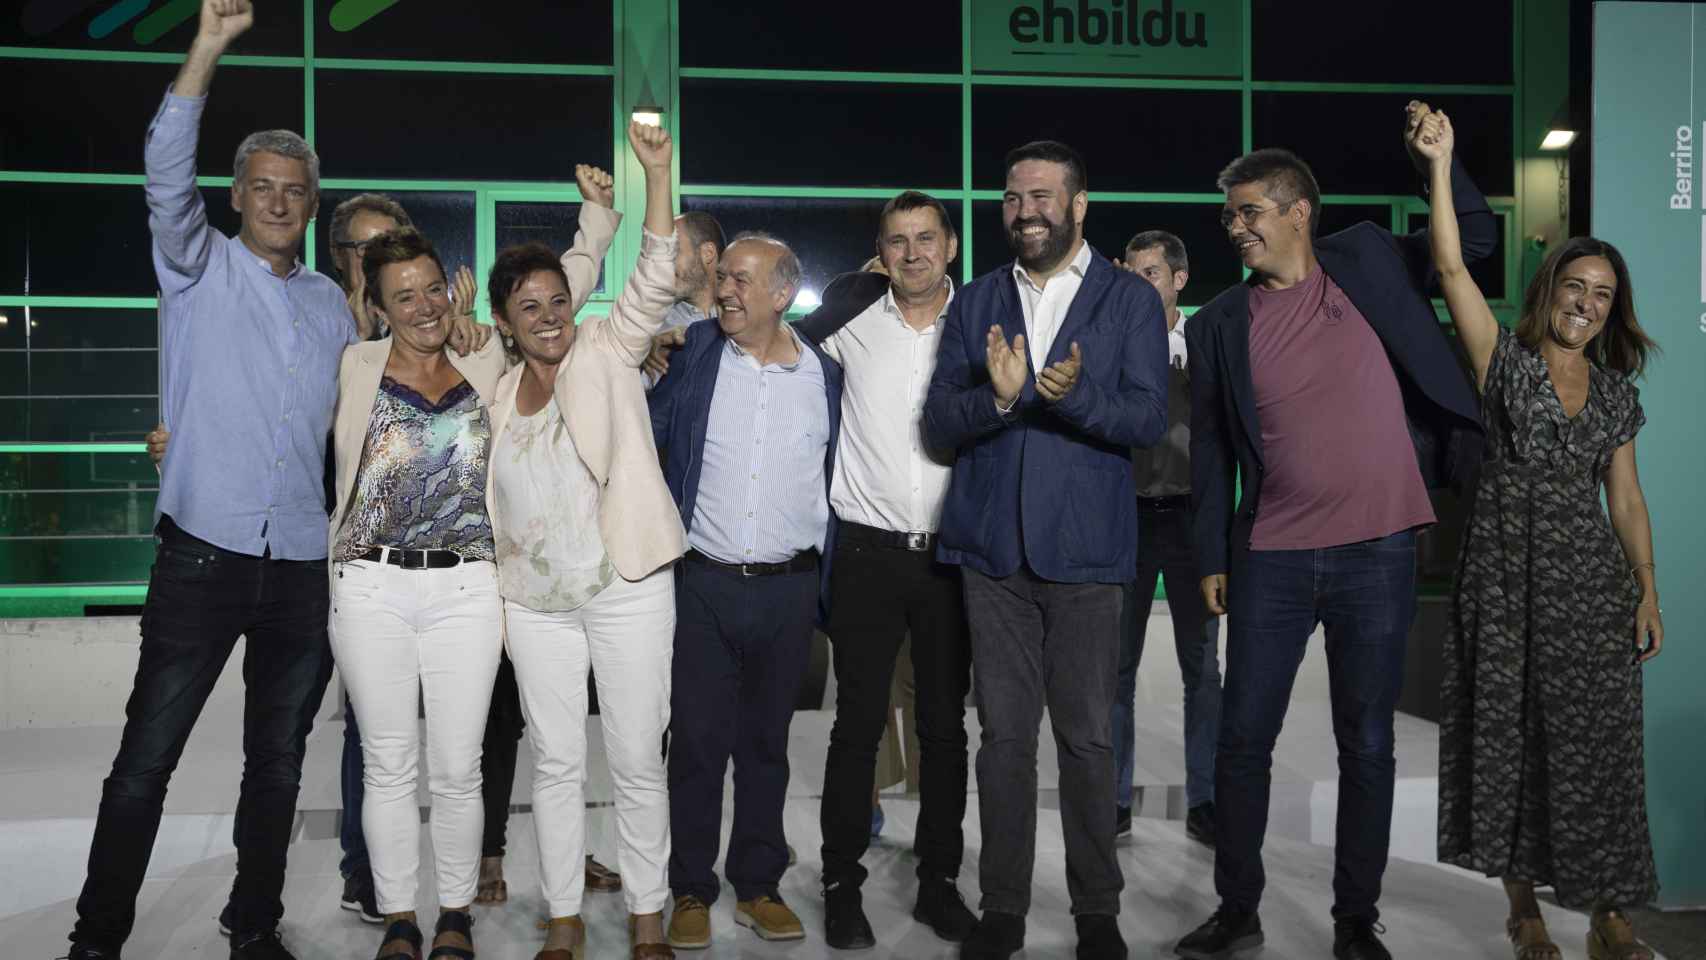 El coordinador general de EH Bildu, Arnaldo Otegi, celebra los resultados electorales en la sede de su partido en San Sebastián / Javier Etxezarreta - EFE